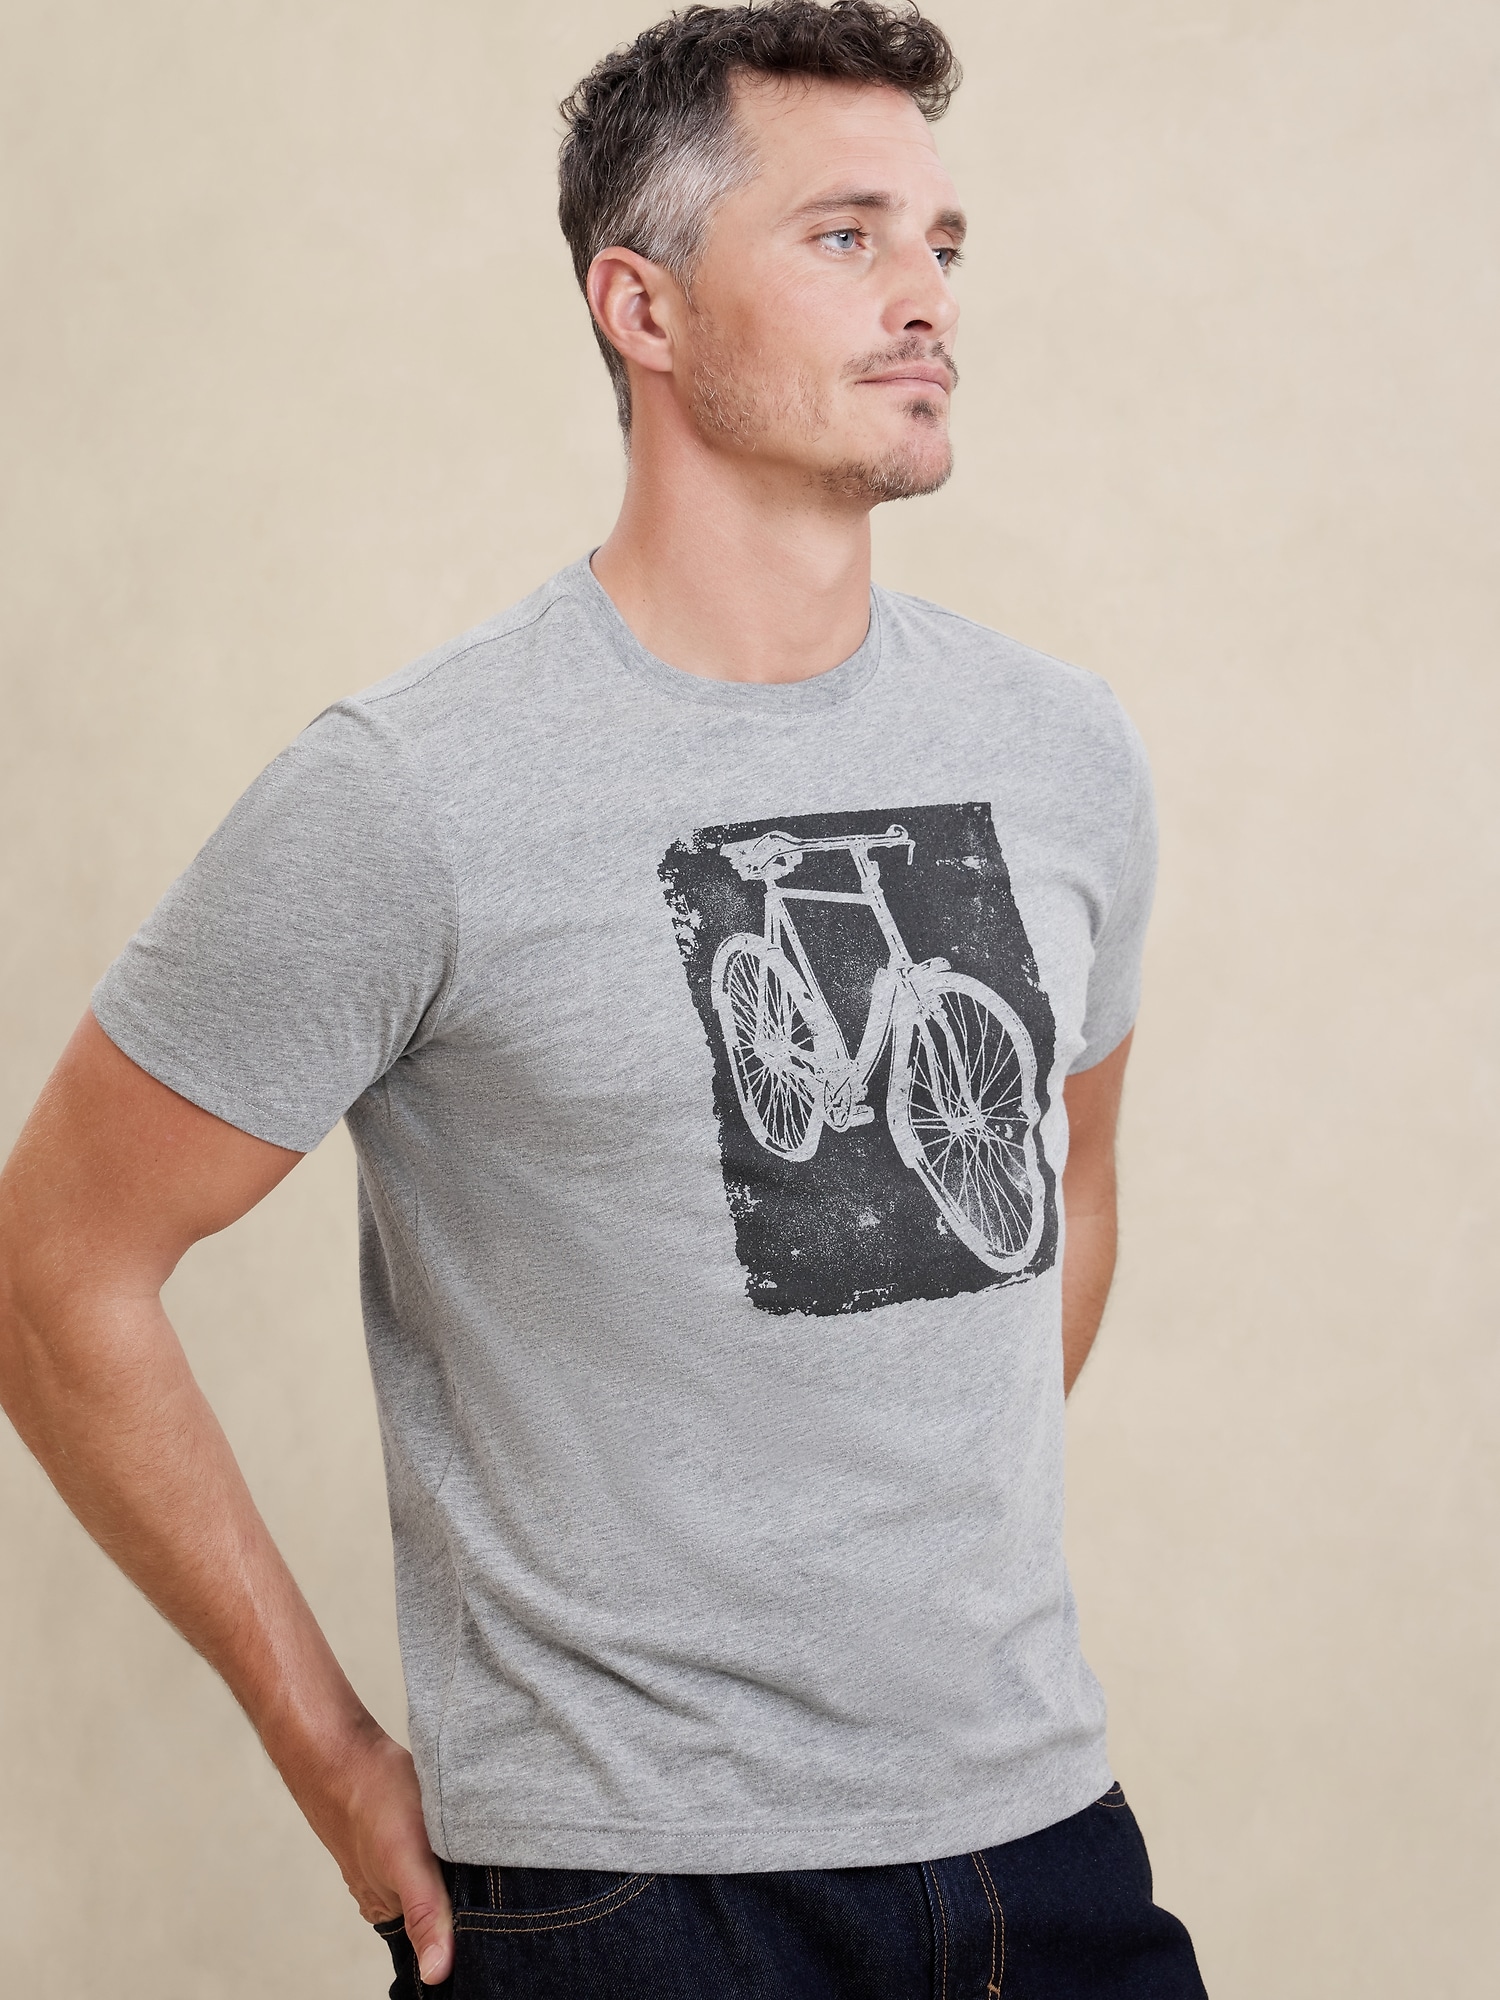 Bike Graphic T-Shirt